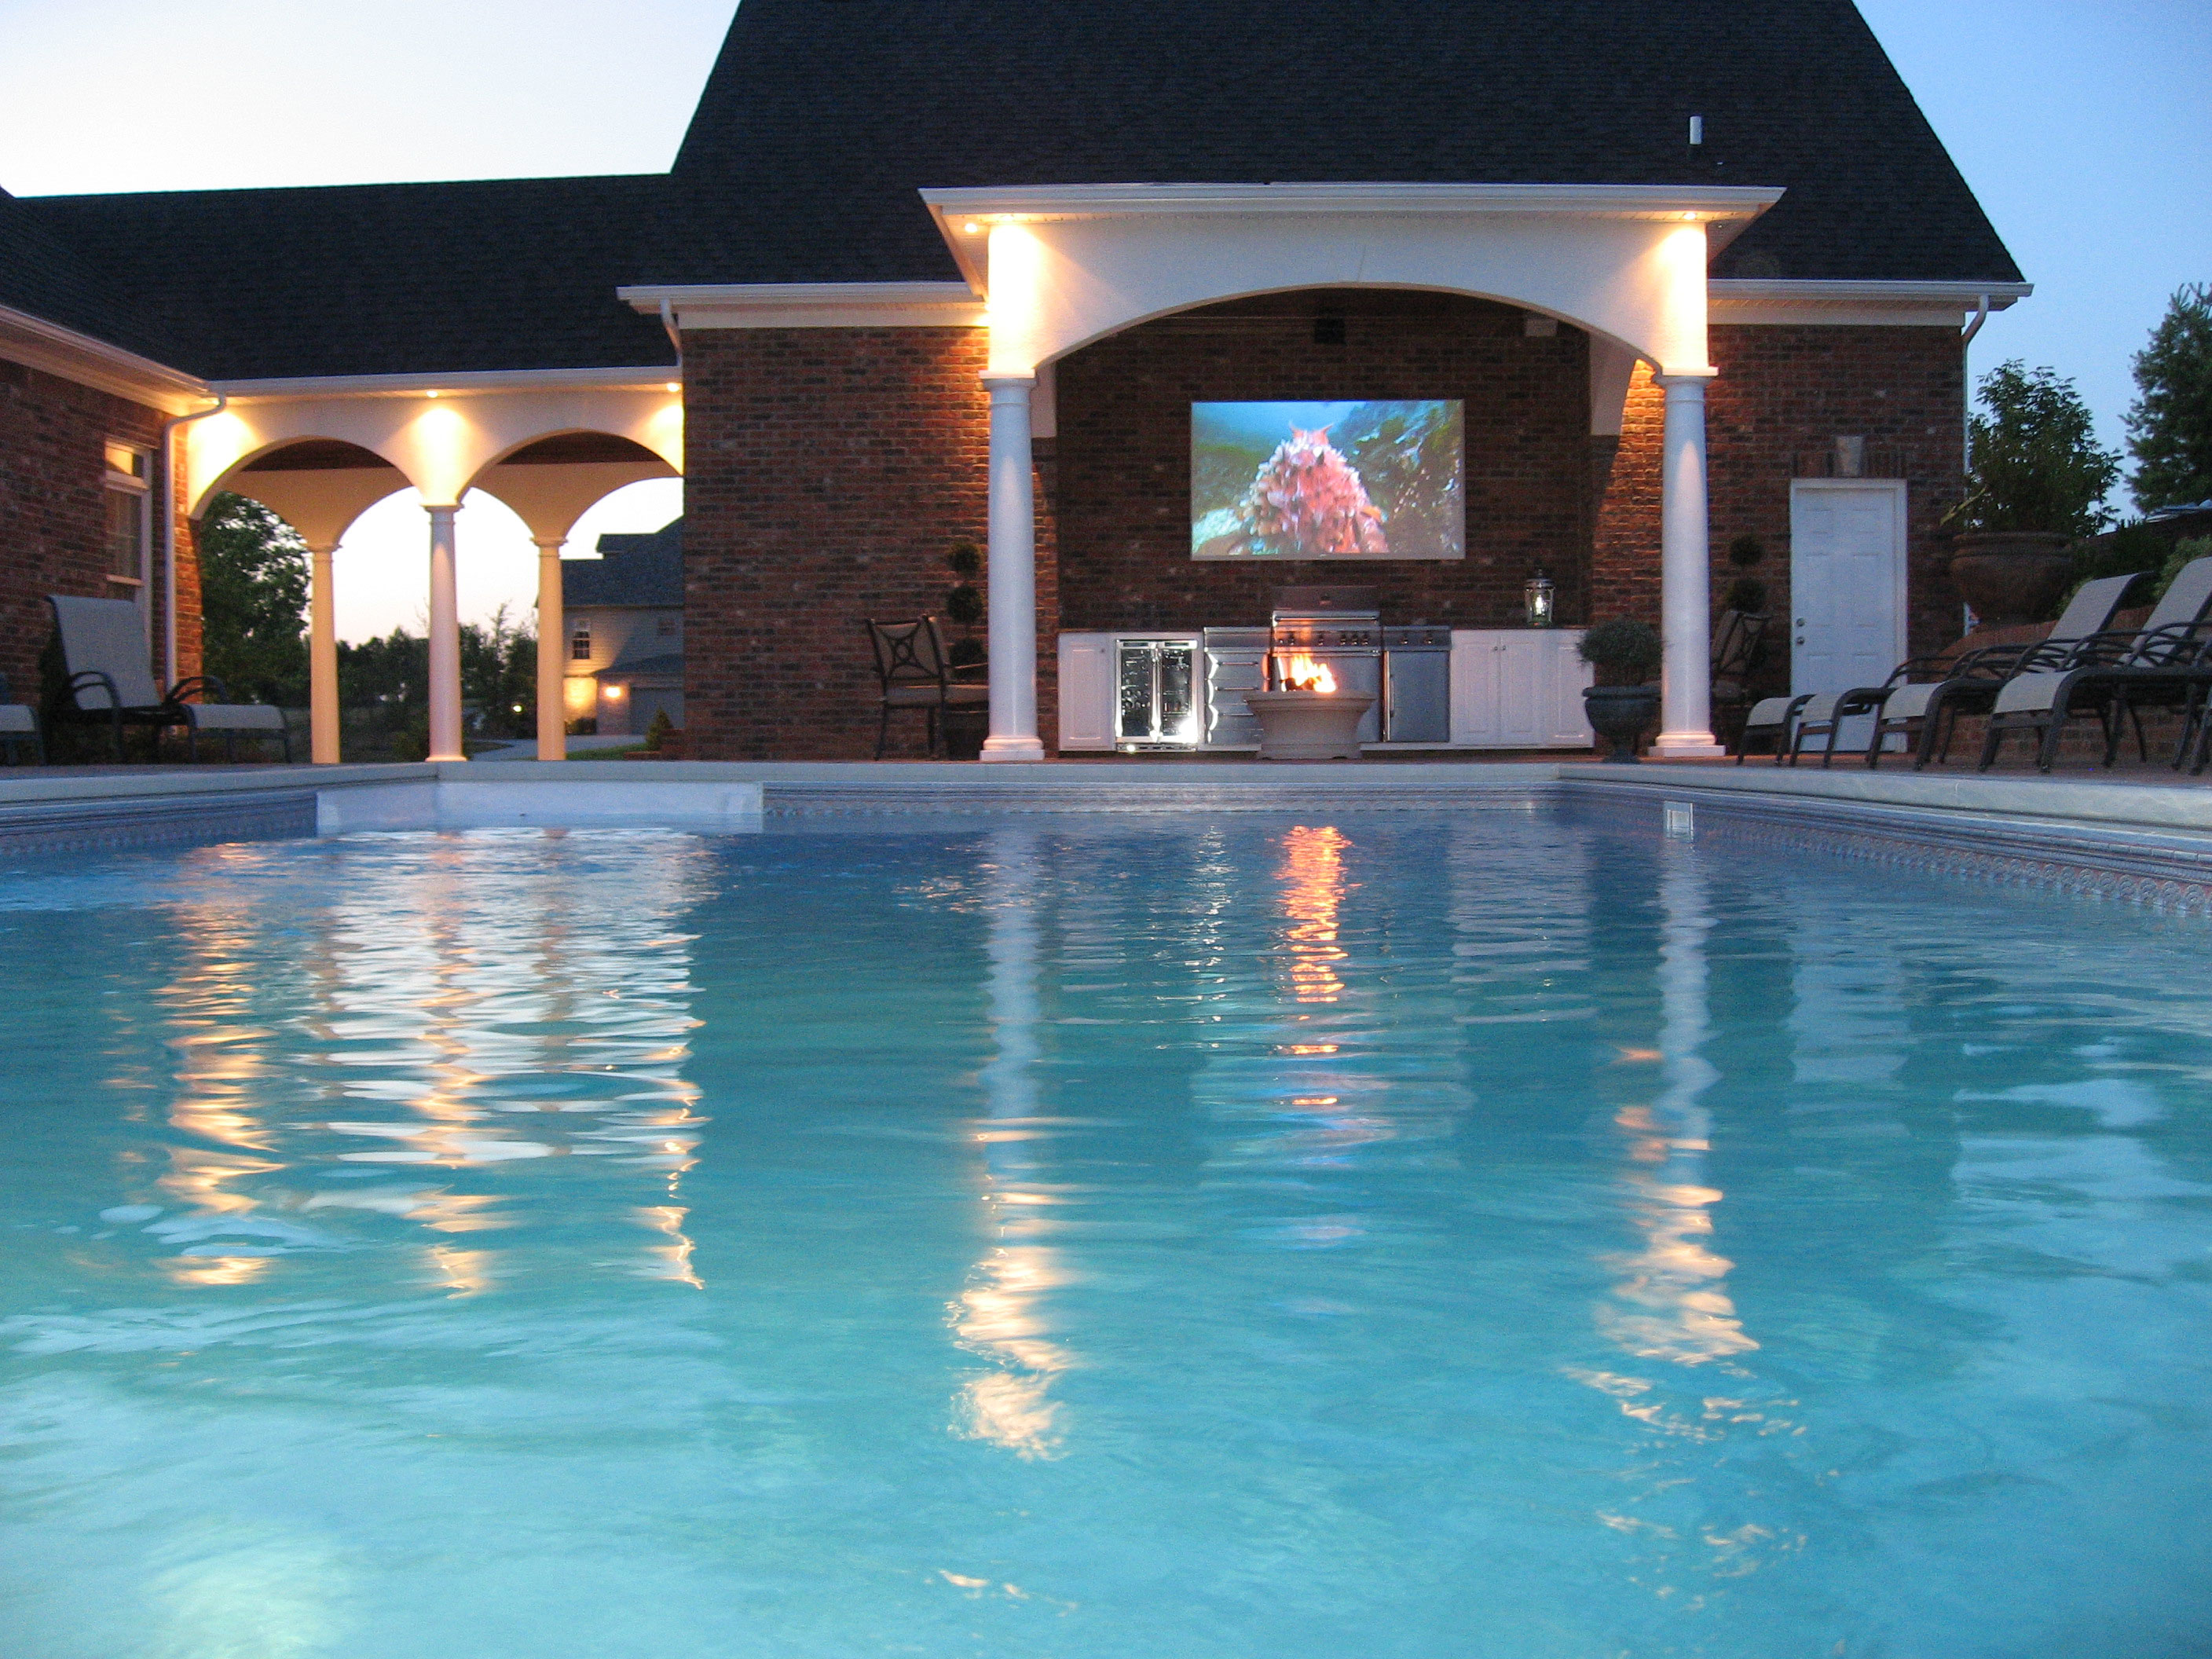 Outdoor pool with TV overlook.